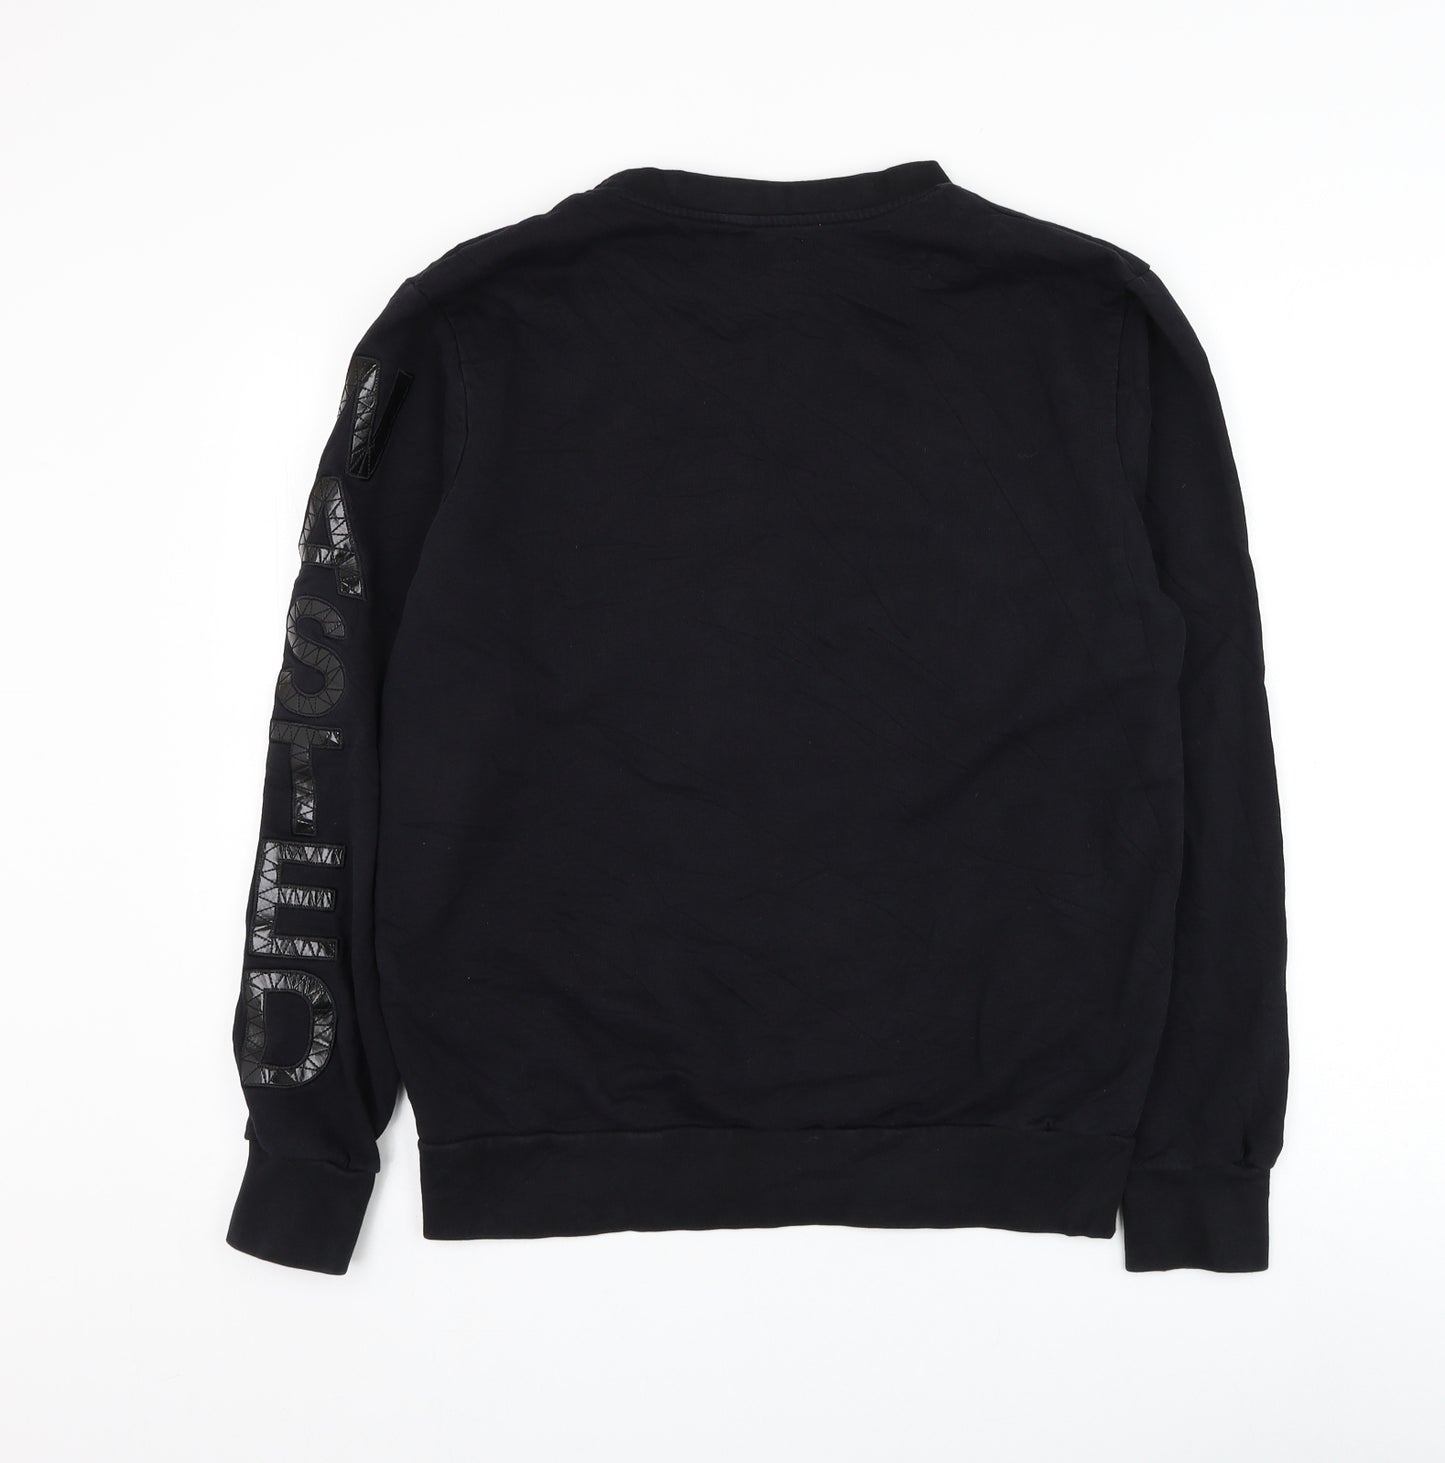 Zara Mens Black Polyester Pullover Sweatshirt Size M - Skull